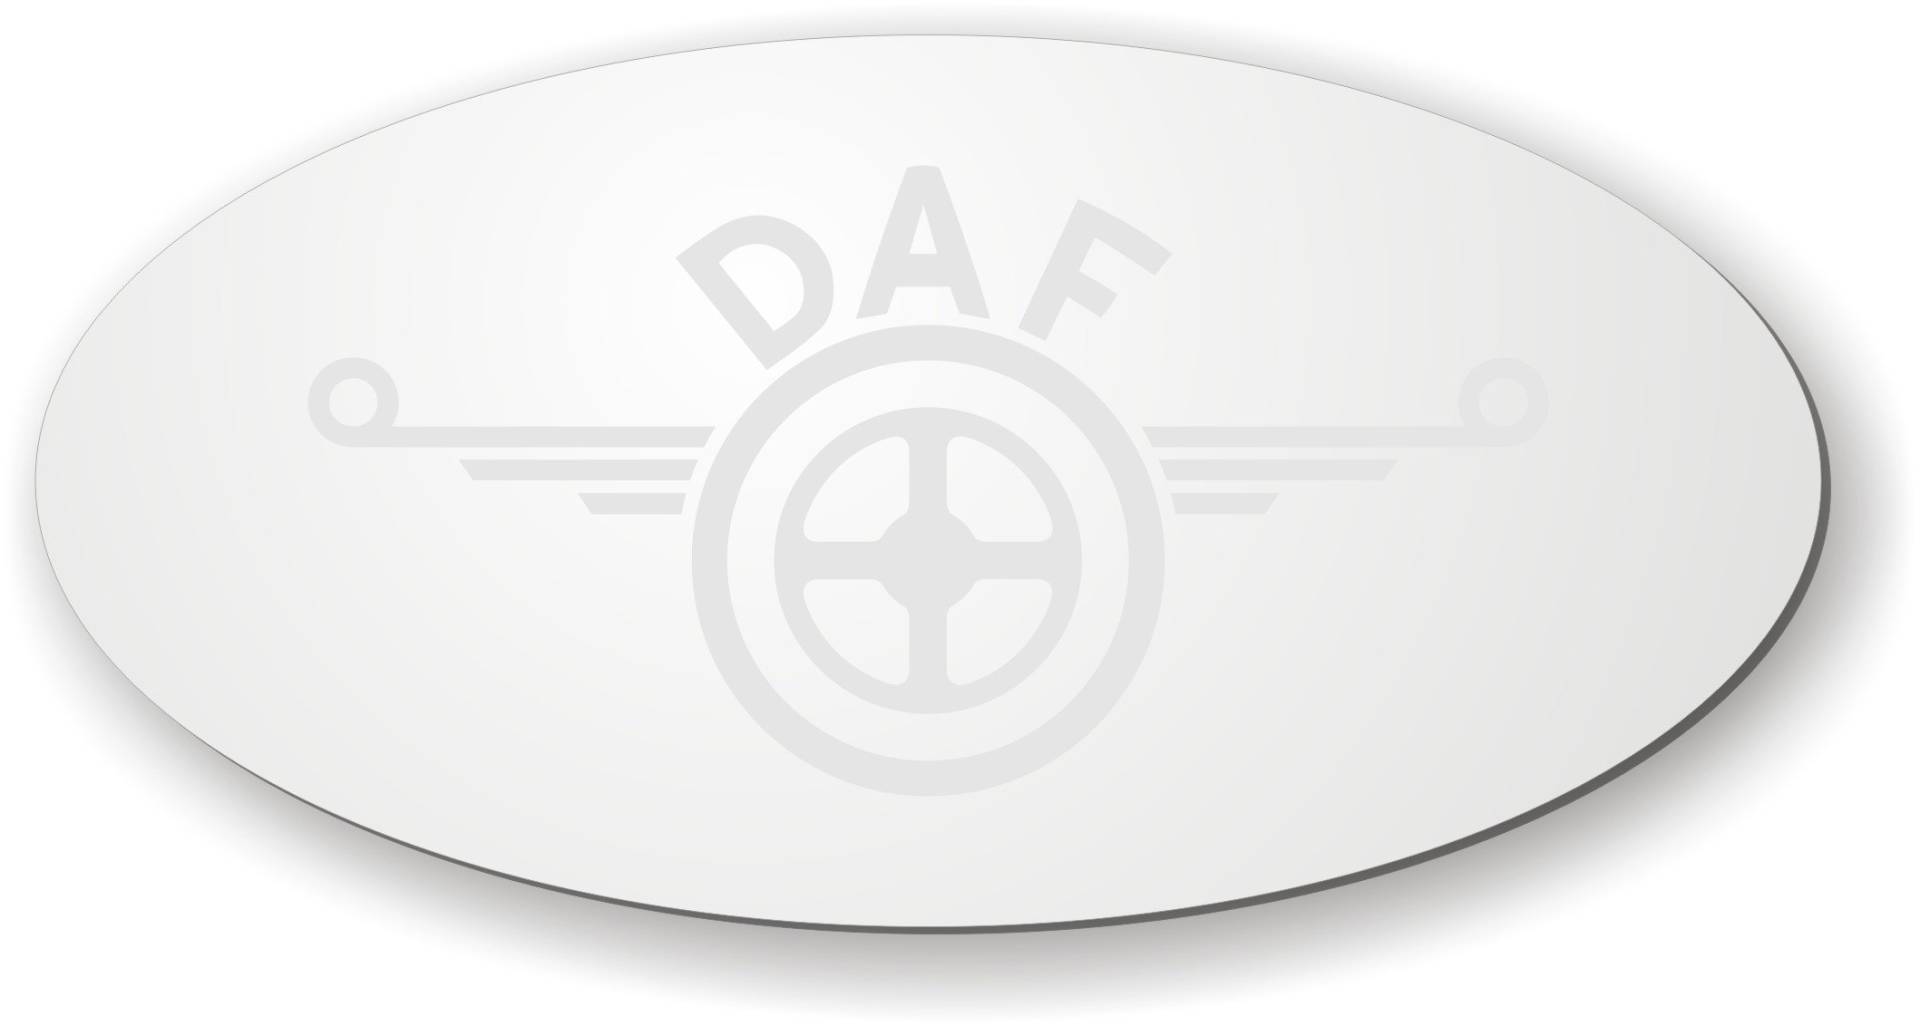 DAF Spiegel mit Logo für die Rückwand ✓ DAF lasergraviert ✓ LKW-Zubehör und Artikel für Innenausstattung ✓ Rückwandspiegel ✓ Truck accessoires für die Fahrerkabine ✓ von Schilderfeuerwehr